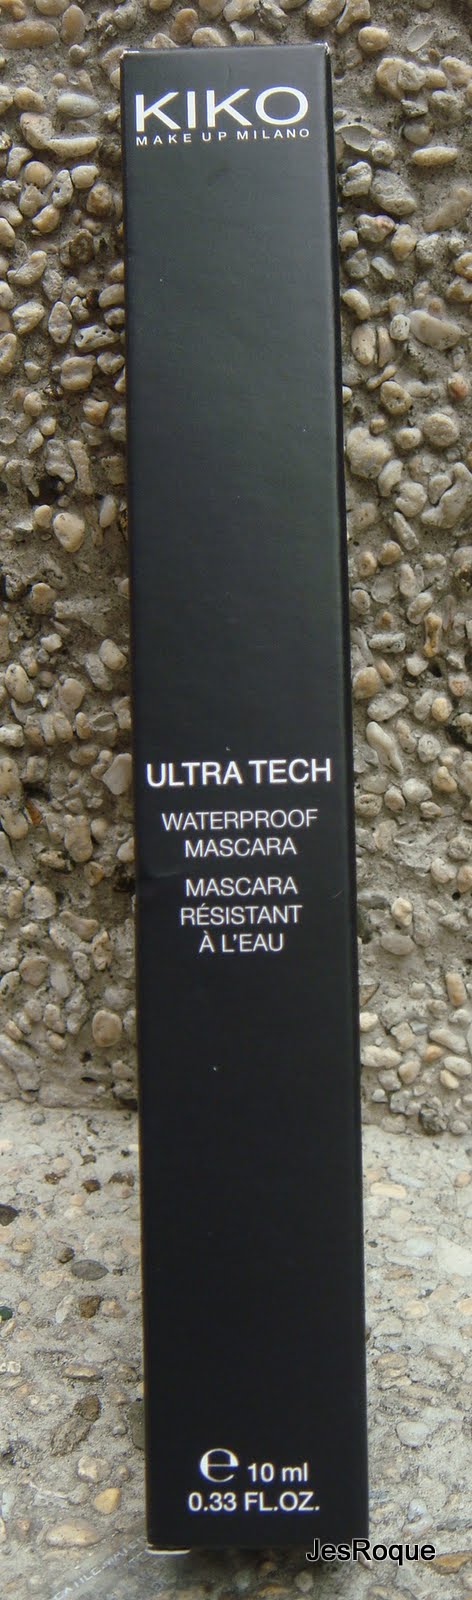 Review: Kiko Ultra Tech Waterproof Mascara